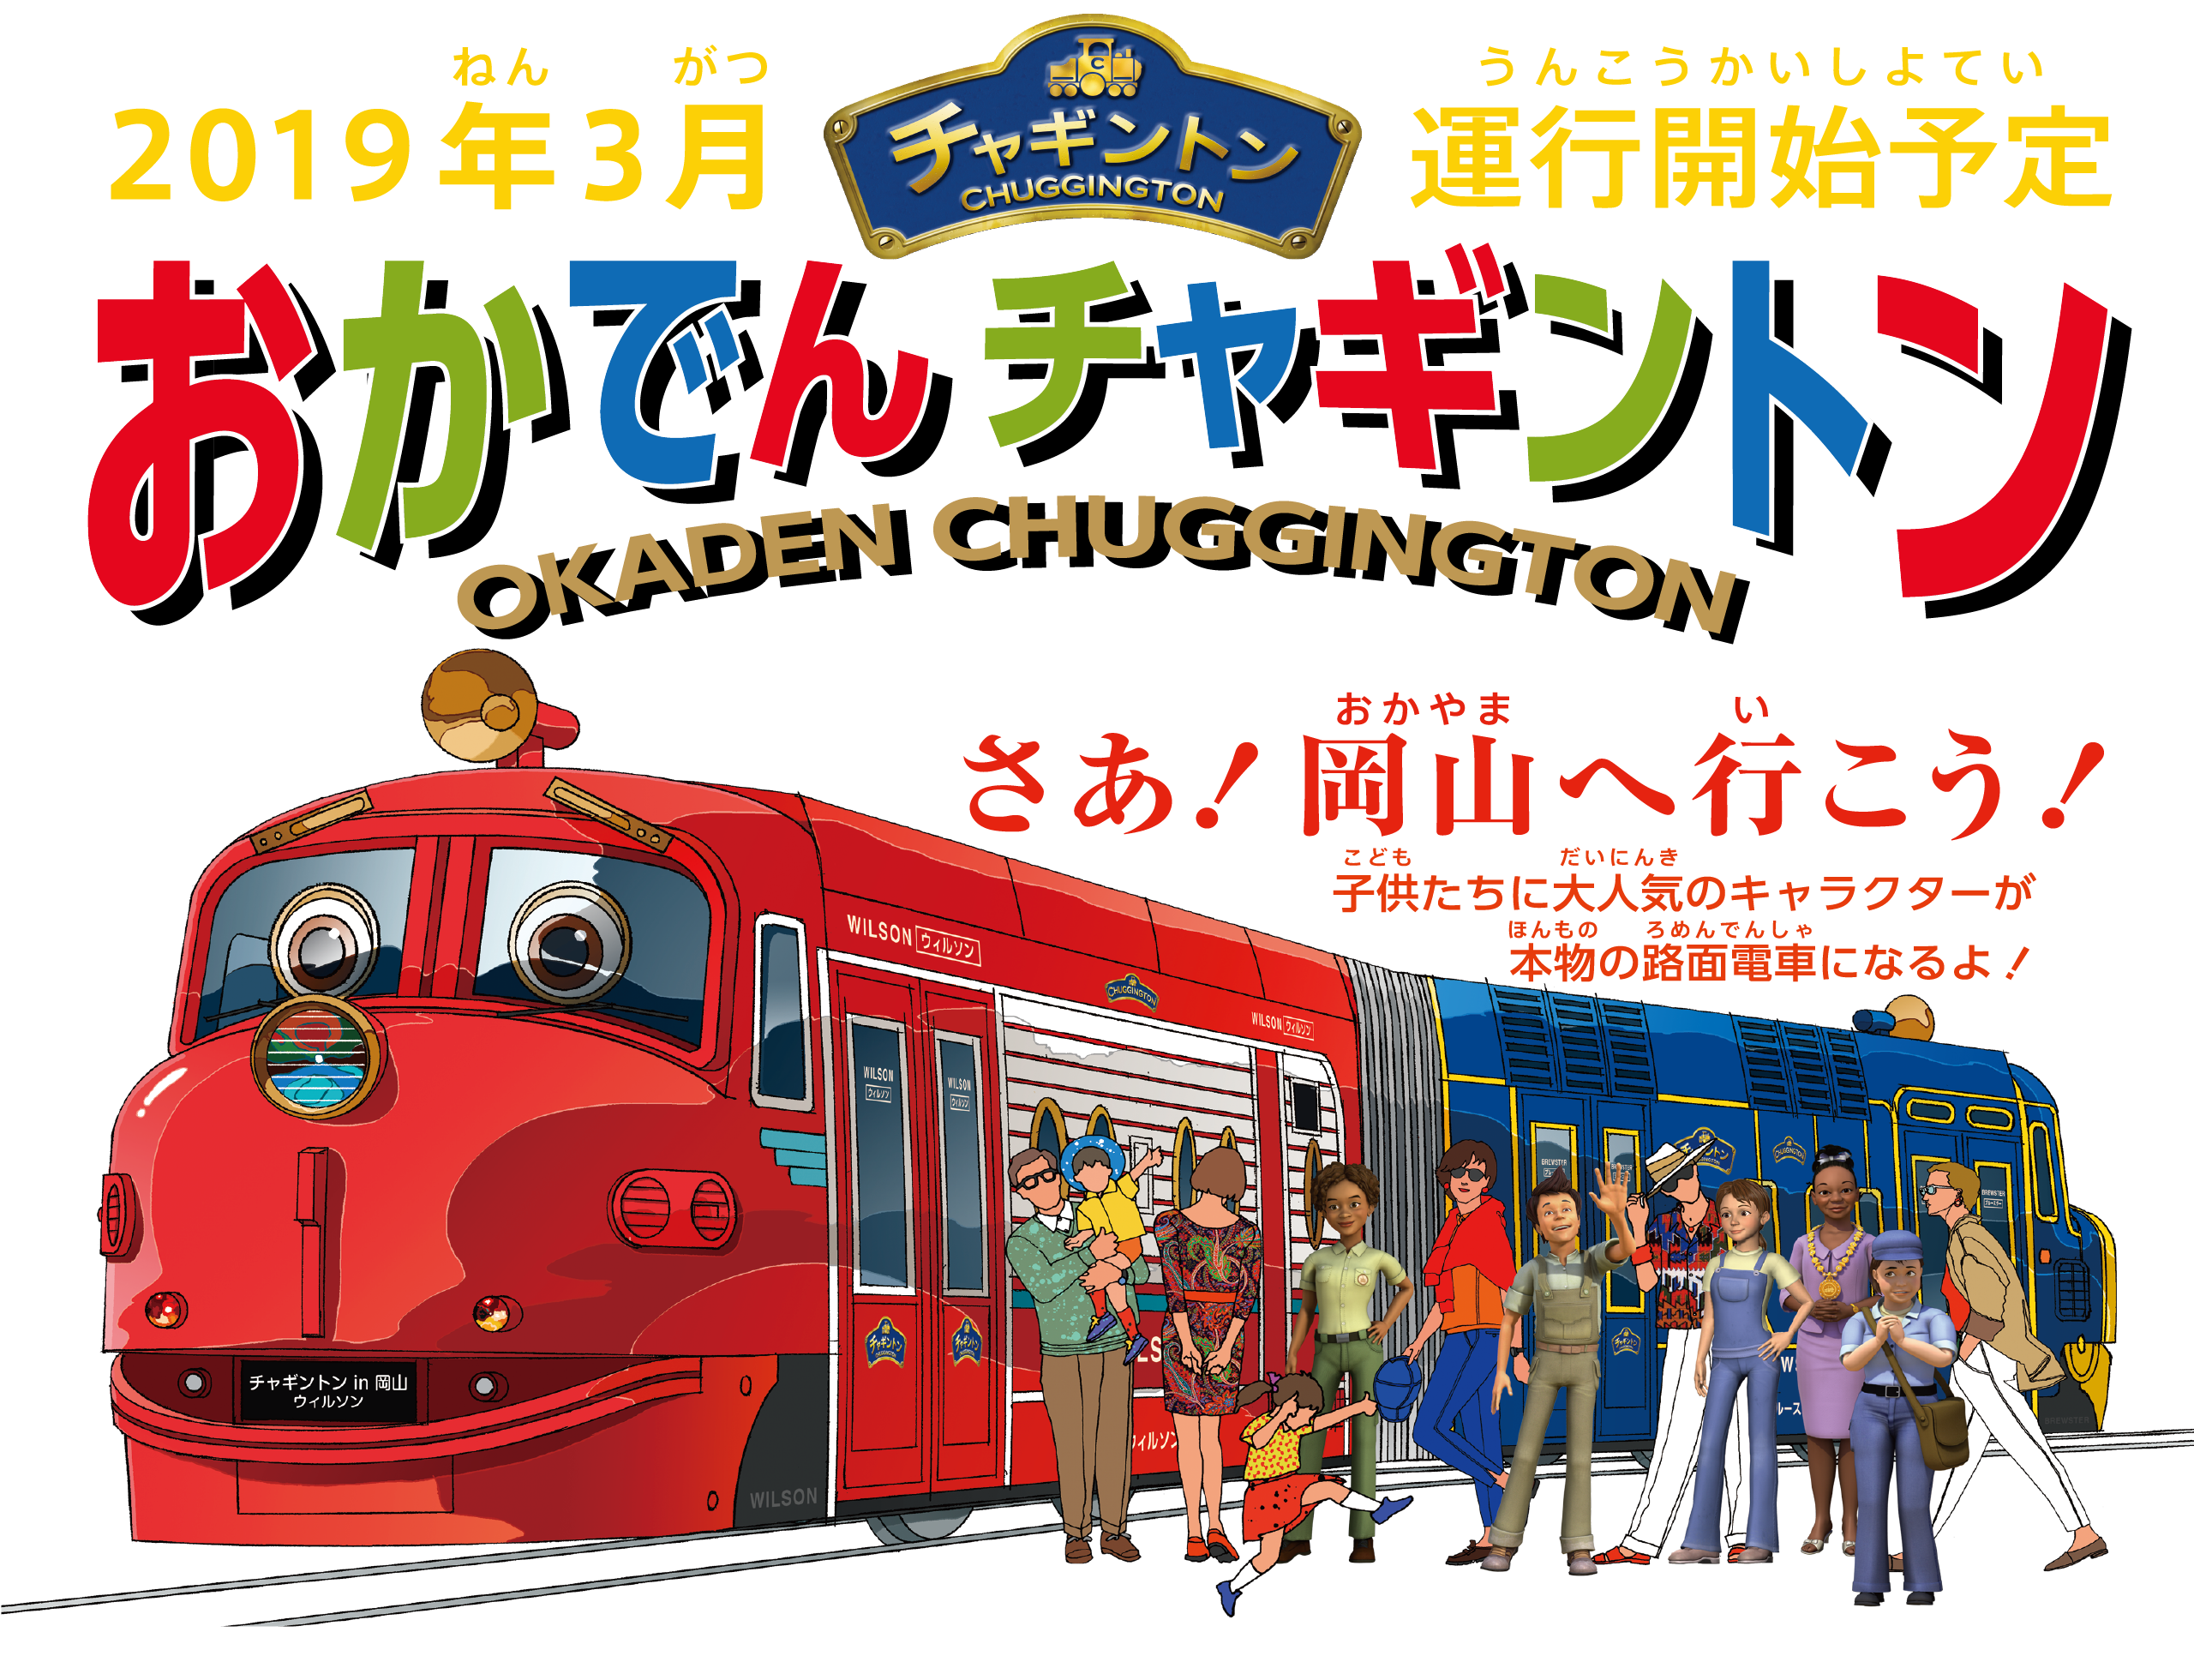 アニメ チャギントン路面電車が岡山に登場 おかでんミュージアムはどんなとこ 井戸端会議で花咲かせ